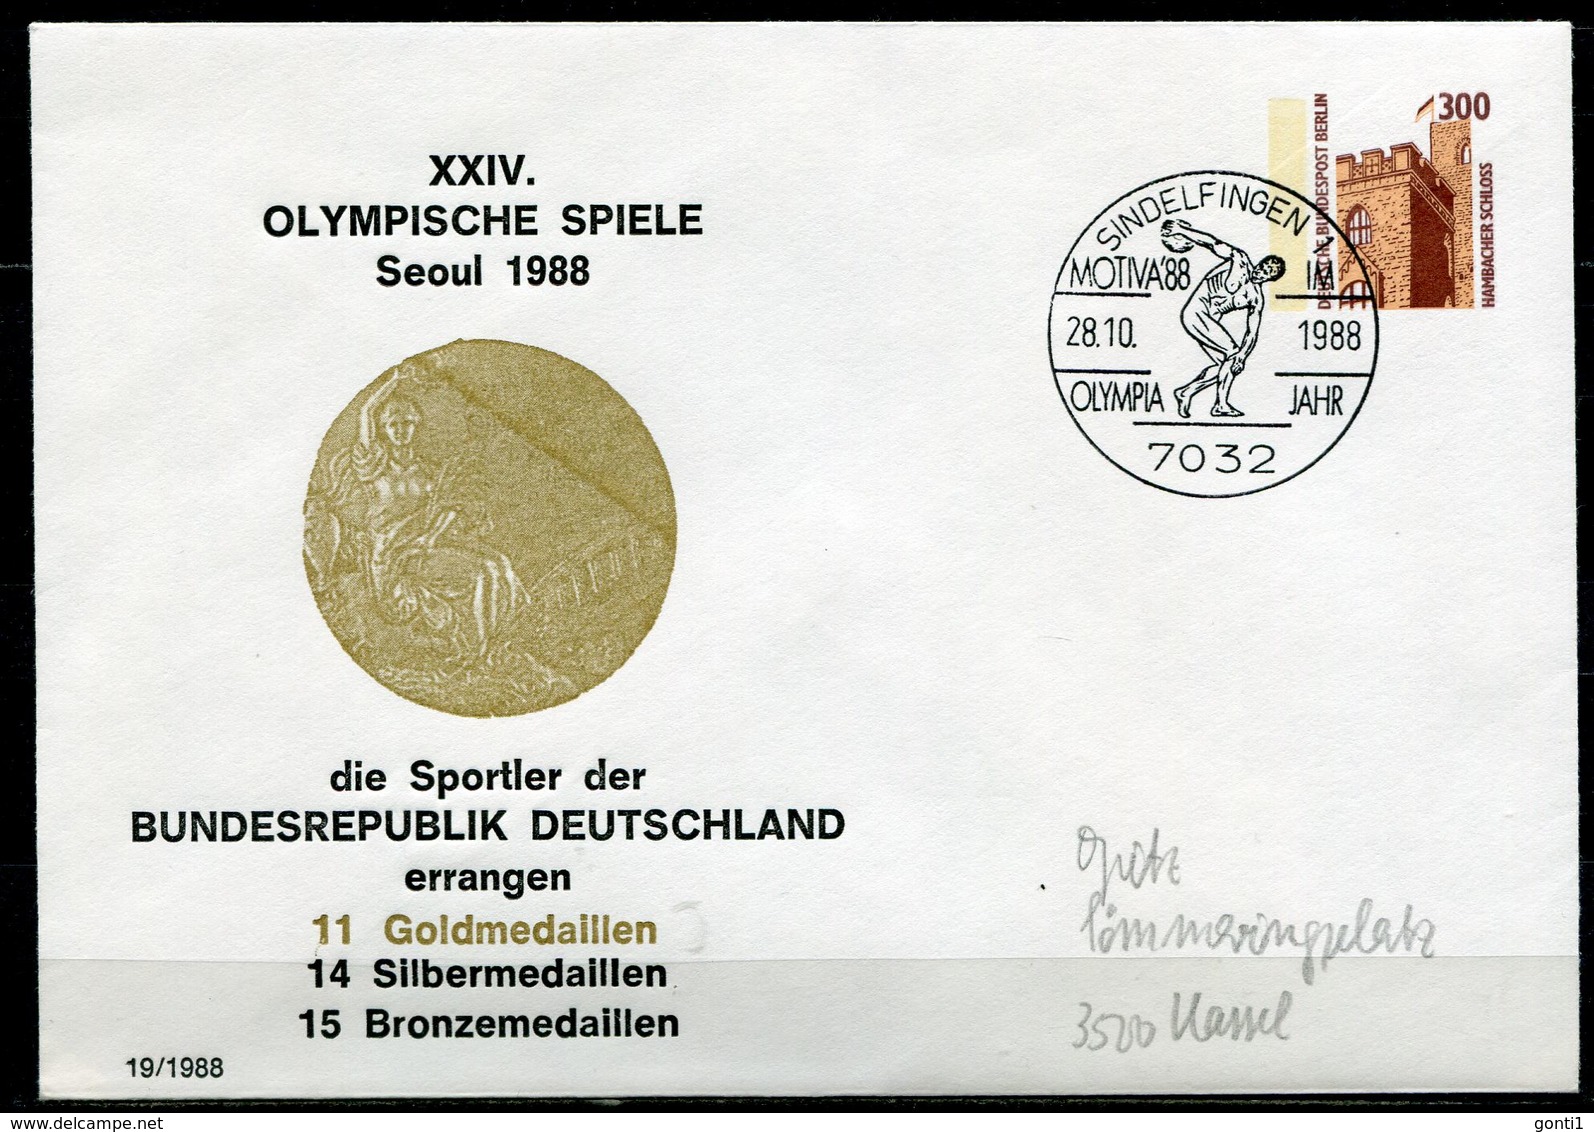 Germany,Berlin 1988 Privatganzsache Olympische Spiele Mi.Nr. PU 143 Mit SST"Sindelfingen-OLYMPIA Jahr "1 Beleg - Sommer 1988: Seoul